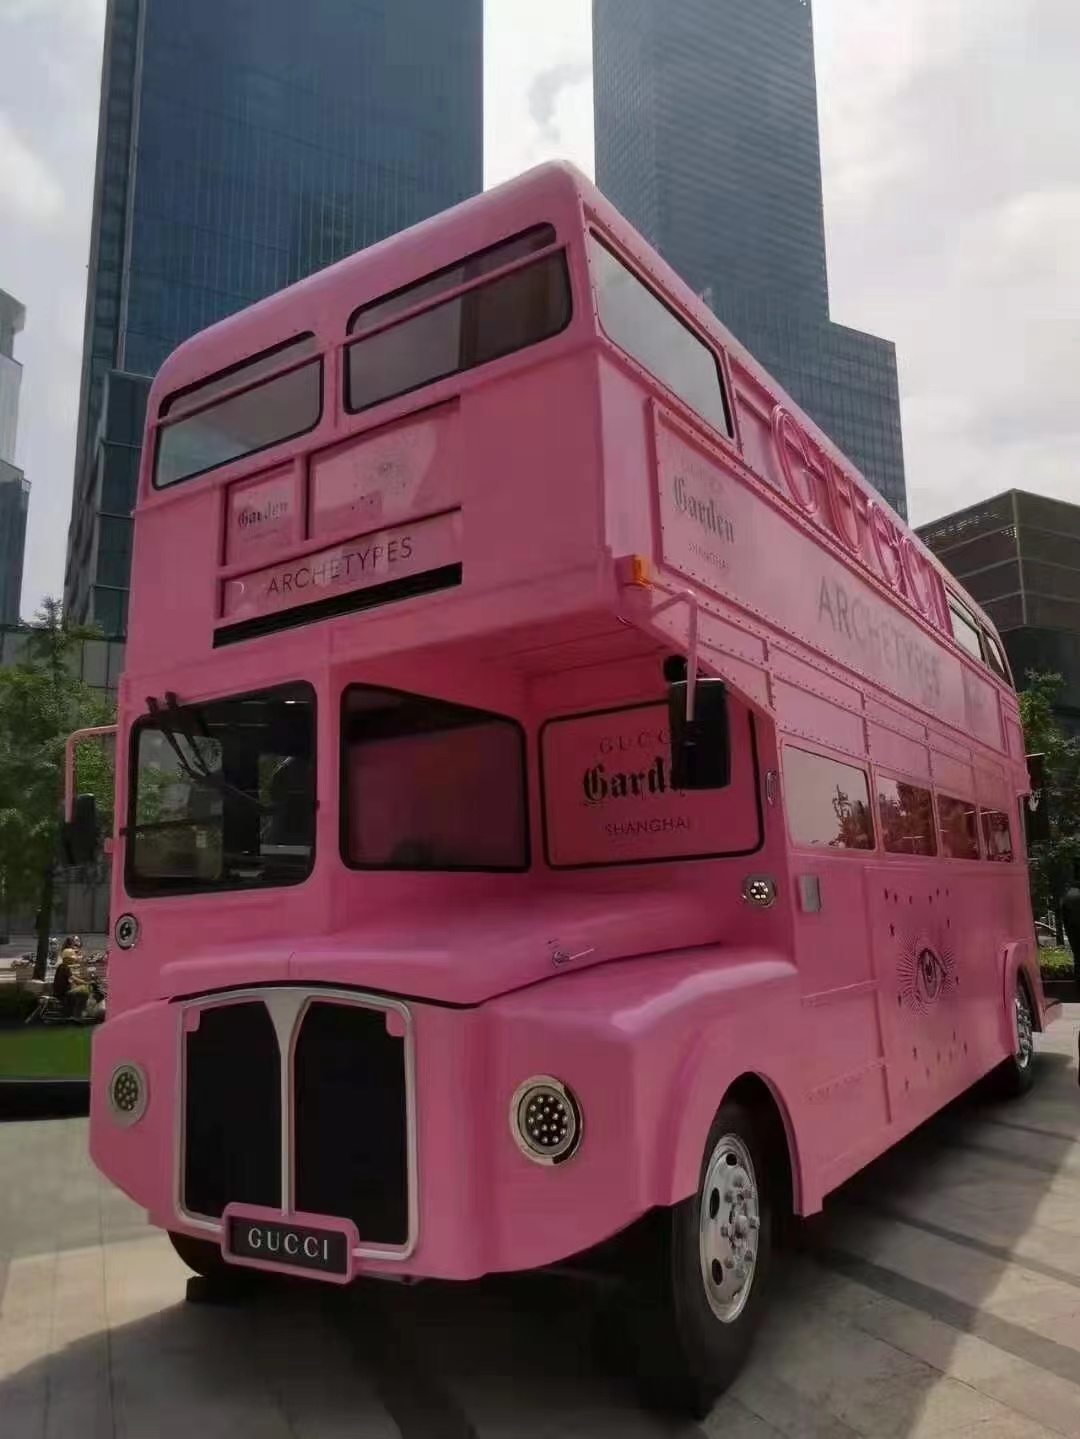 大型双层巴士模型观光车步行街景区商场餐车美陈装饰布置道具图片